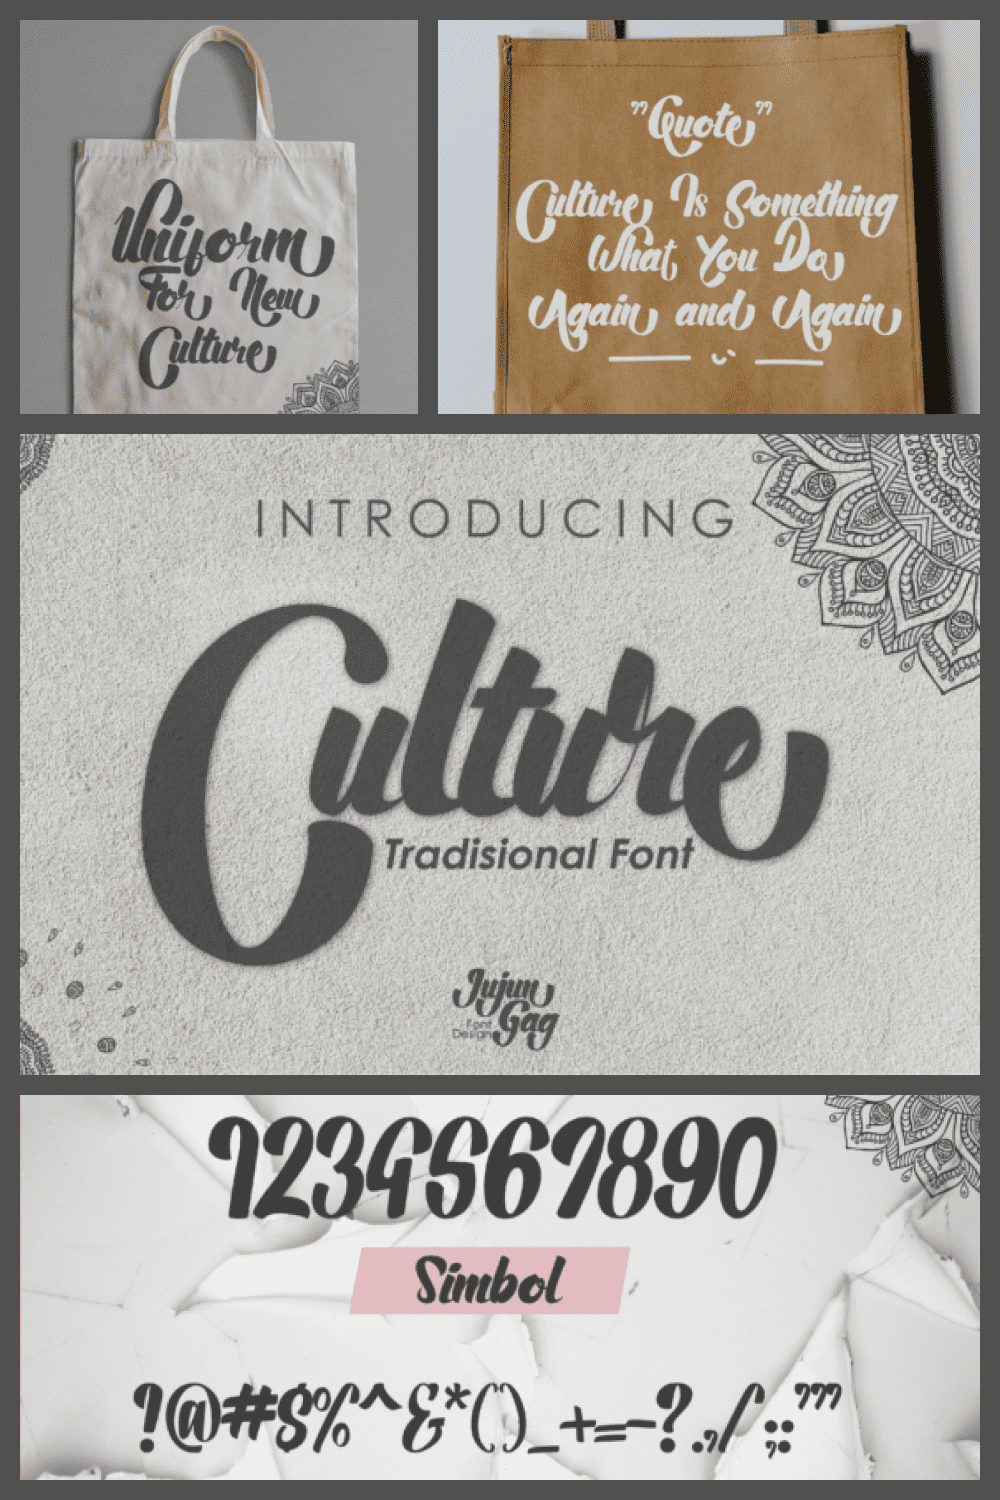 Culture Bold Script Font - MasterBundles - Pinterest Collage Image.